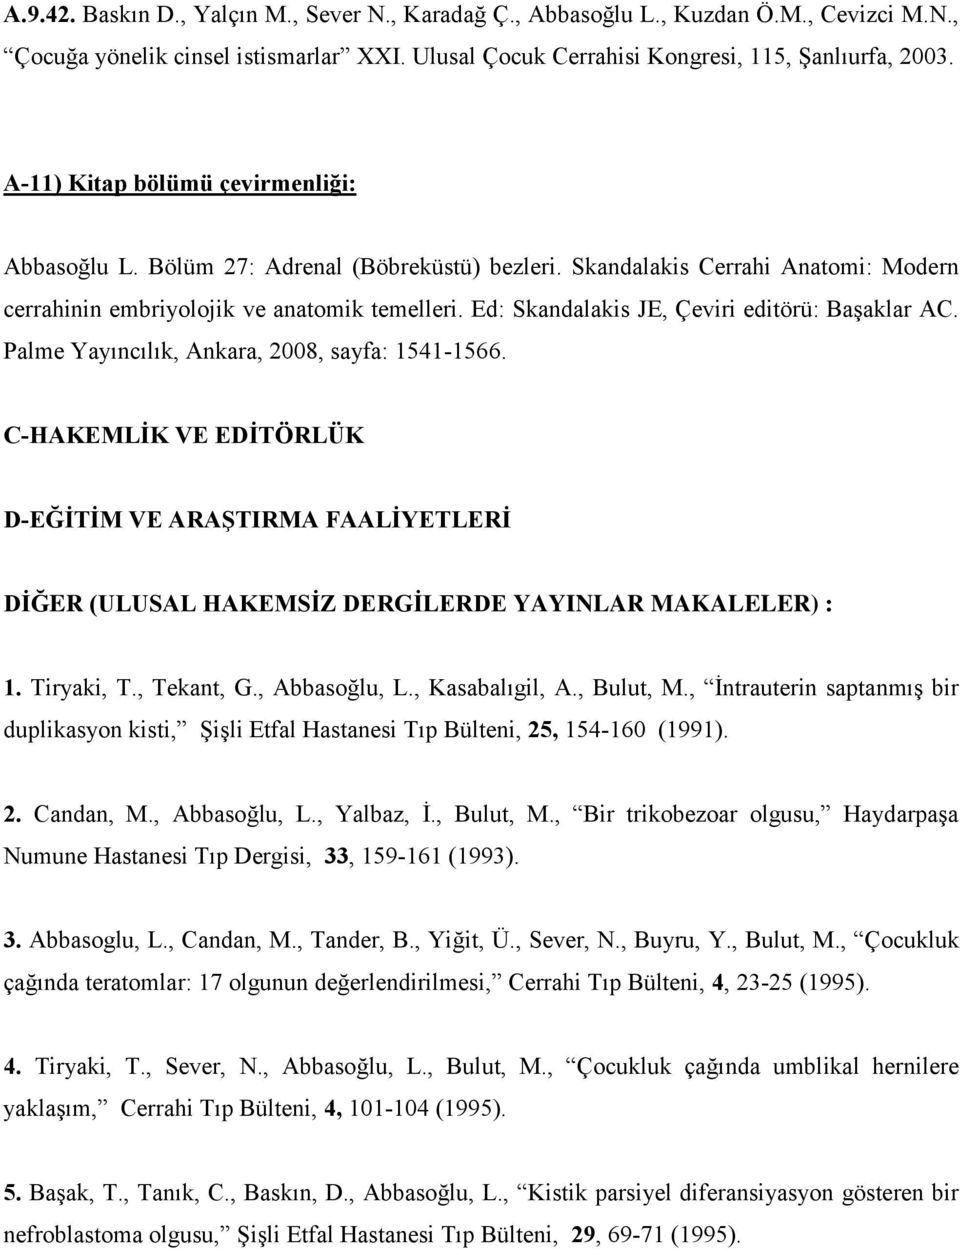 Ed: Skandalakis JE, Çeviri editörü: Başaklar AC. Palme Yayıncılık, Ankara, 2008, sayfa: 1541-1566.